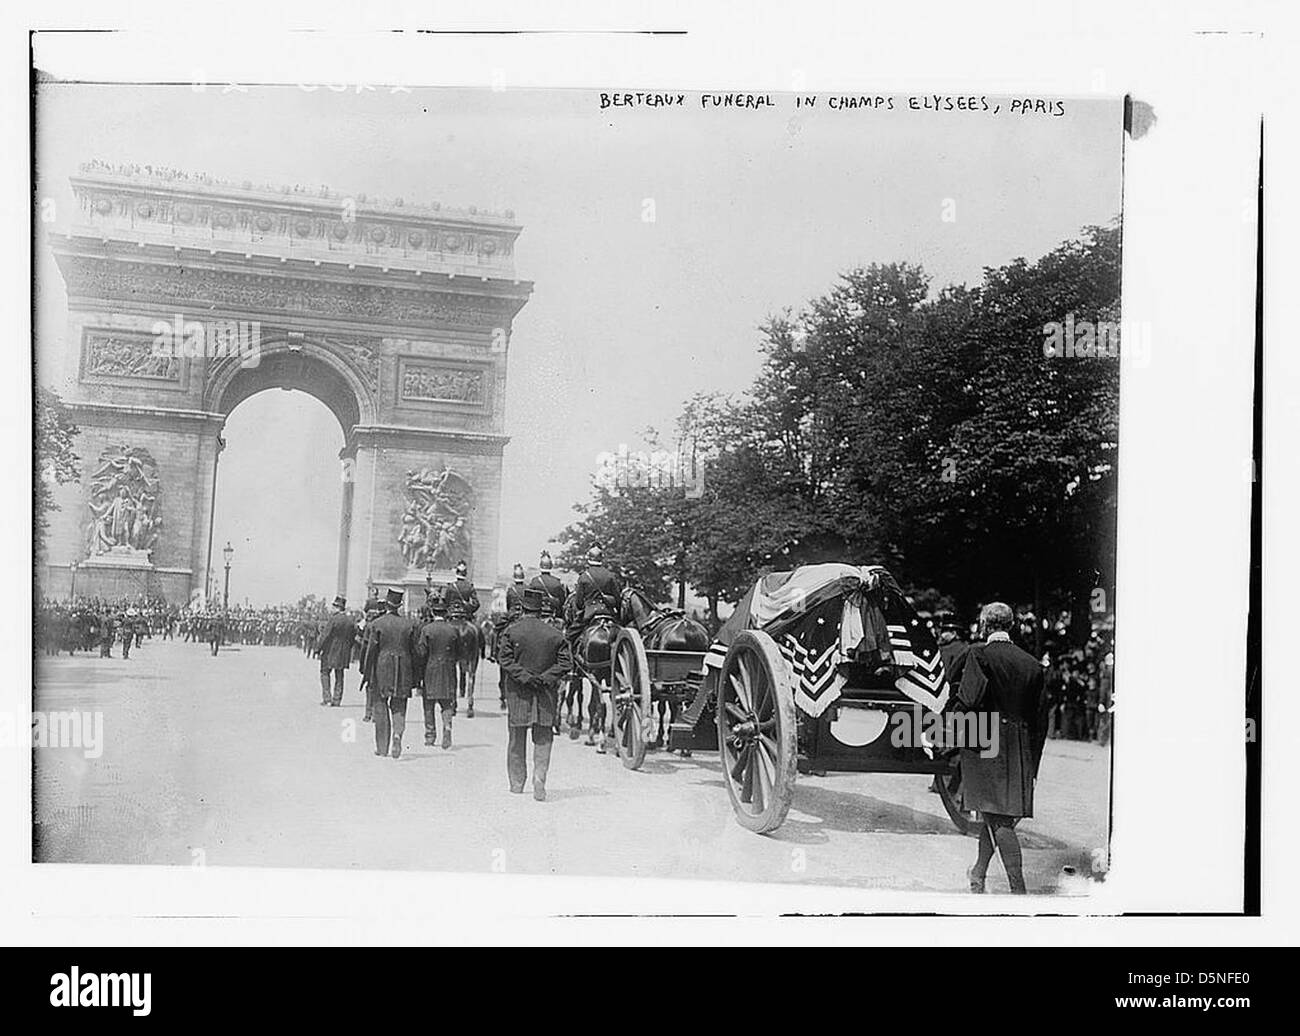 Berteaux Funeral in Champs Elysees, Paris (LOC) Stock Photo